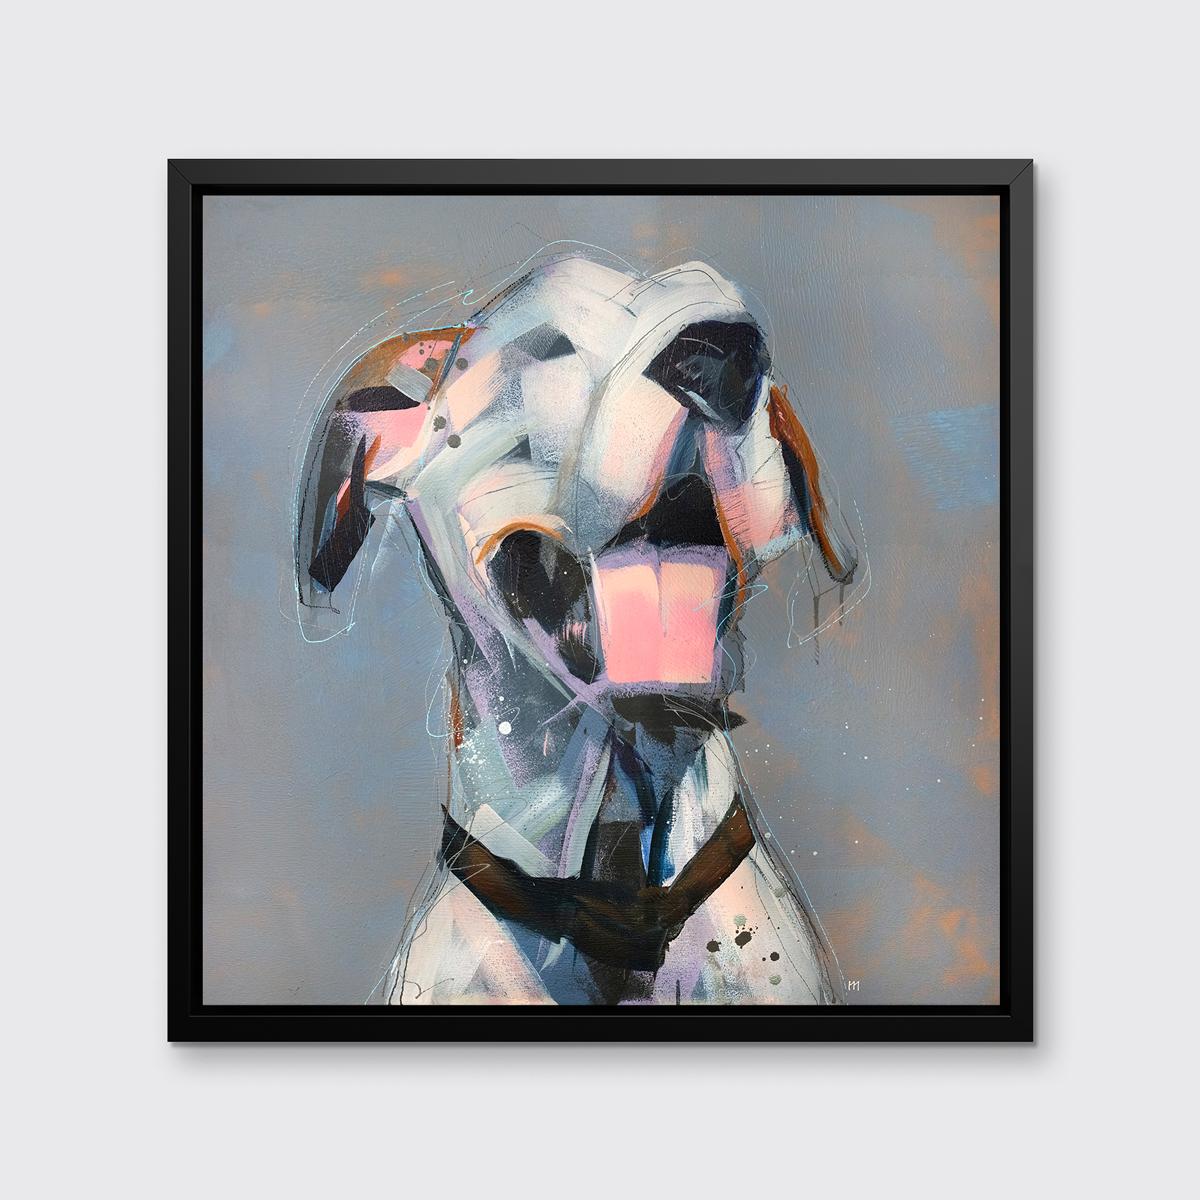 Dieser abstrahierte Druck eines Hundes des Künstlers Russell Miyaki zeichnet sich durch eine helle, neutrale Farbpalette mit ausdrucksstarken, verspielten Elementen aus, um eine energiegeladene Komposition eines Dalmatiners mit geöffnetem Maul und